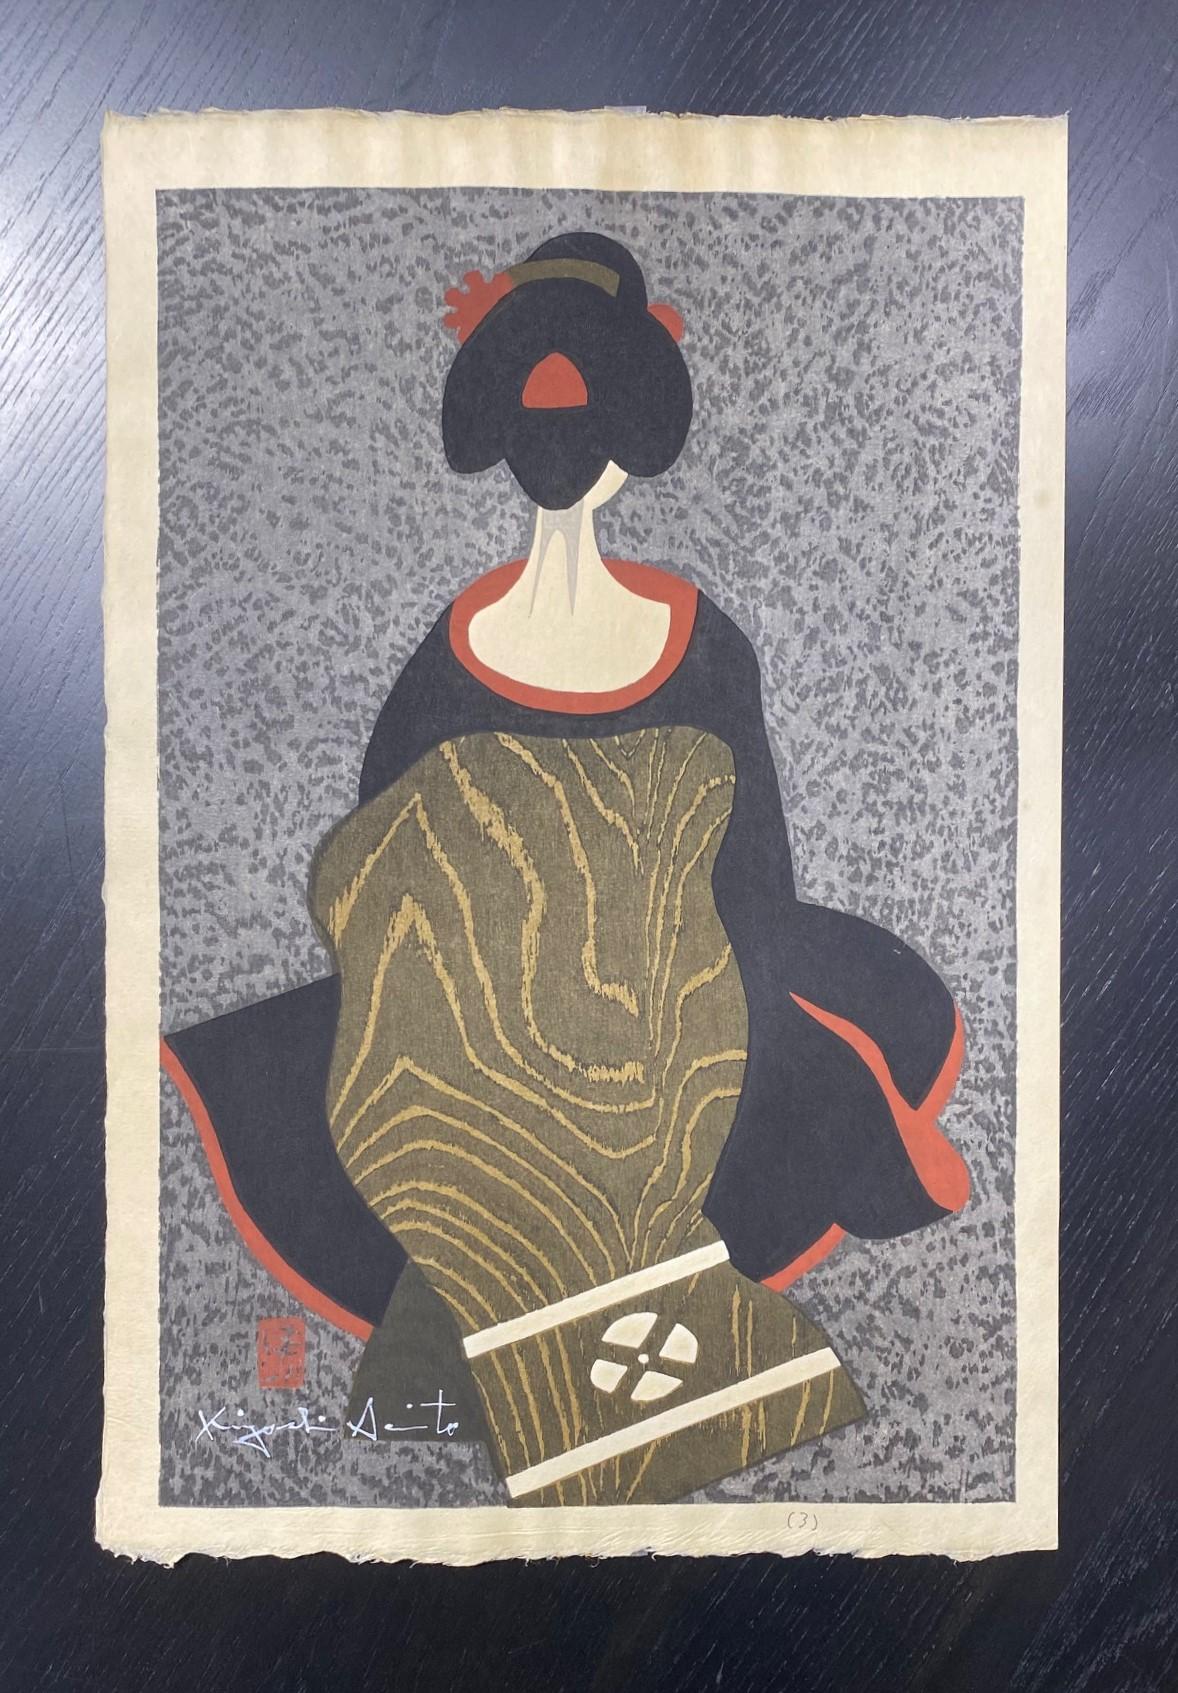 Une magnifique et sereine gravure sur bois du célèbre graveur japonais Kiyoshi Saito. Beaucoup considèrent Saito comme l'un des plus importants, sinon le plus important, des graveurs japonais contemporains du XXe siècle. Cette estampe, intitulée